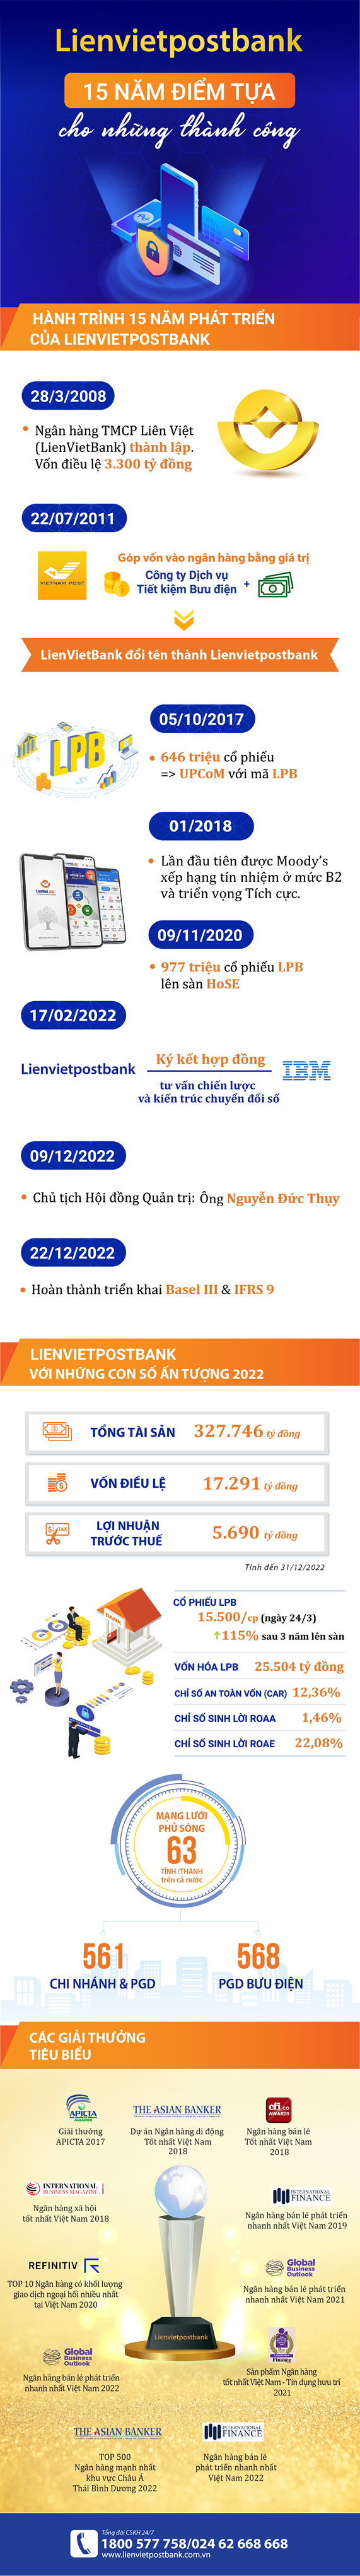 [Infographic] Lienvietpostbank - 15 năm mở rộng quy mô, lợi nhuận tăng trưởng đột phá